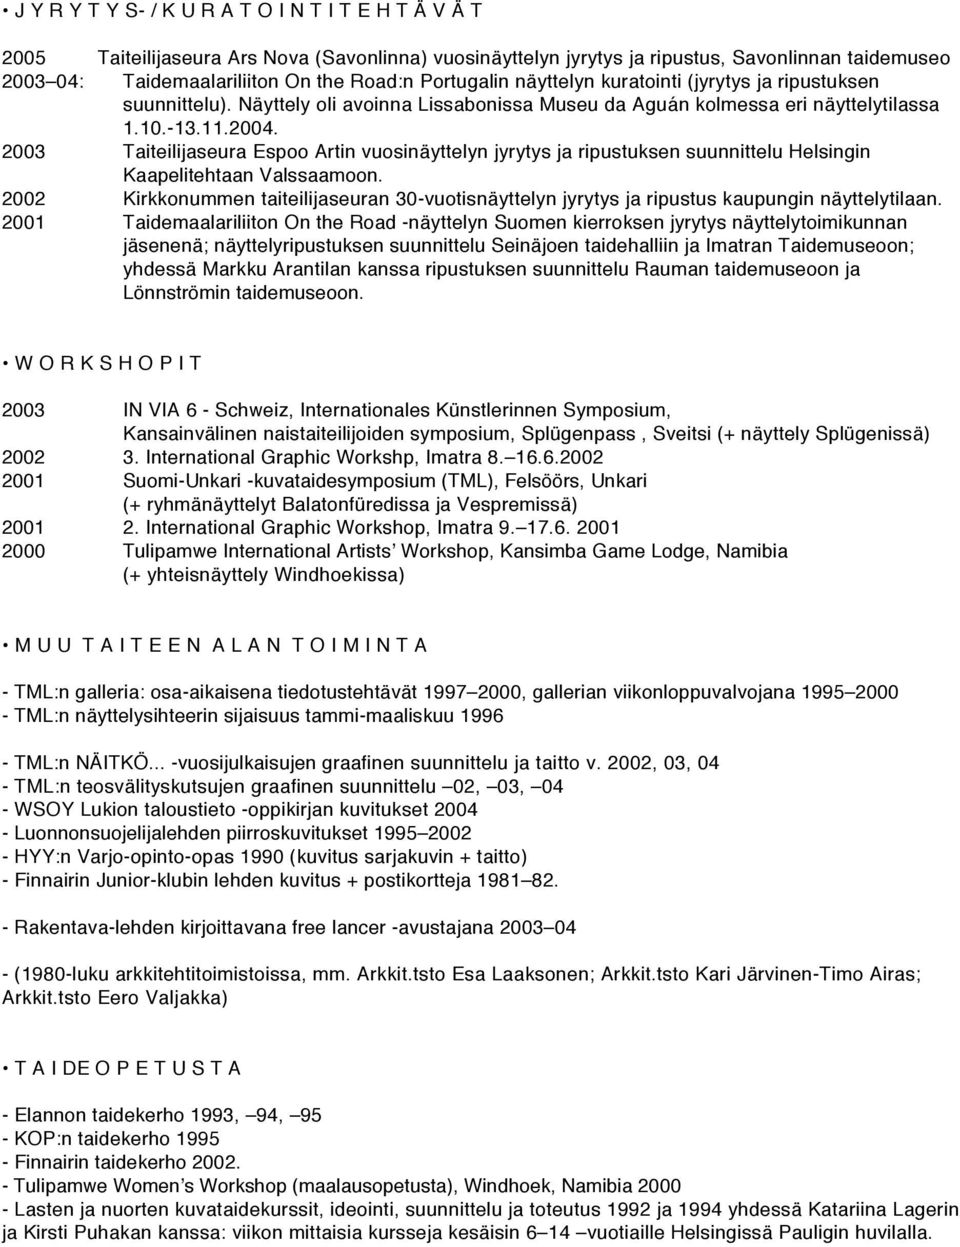 2003 Taiteilijaseura Espoo Artin vuosinäyttelyn jyrytys ja ripustuksen suunnittelu Helsingin Kaapelitehtaan Valssaamoon.